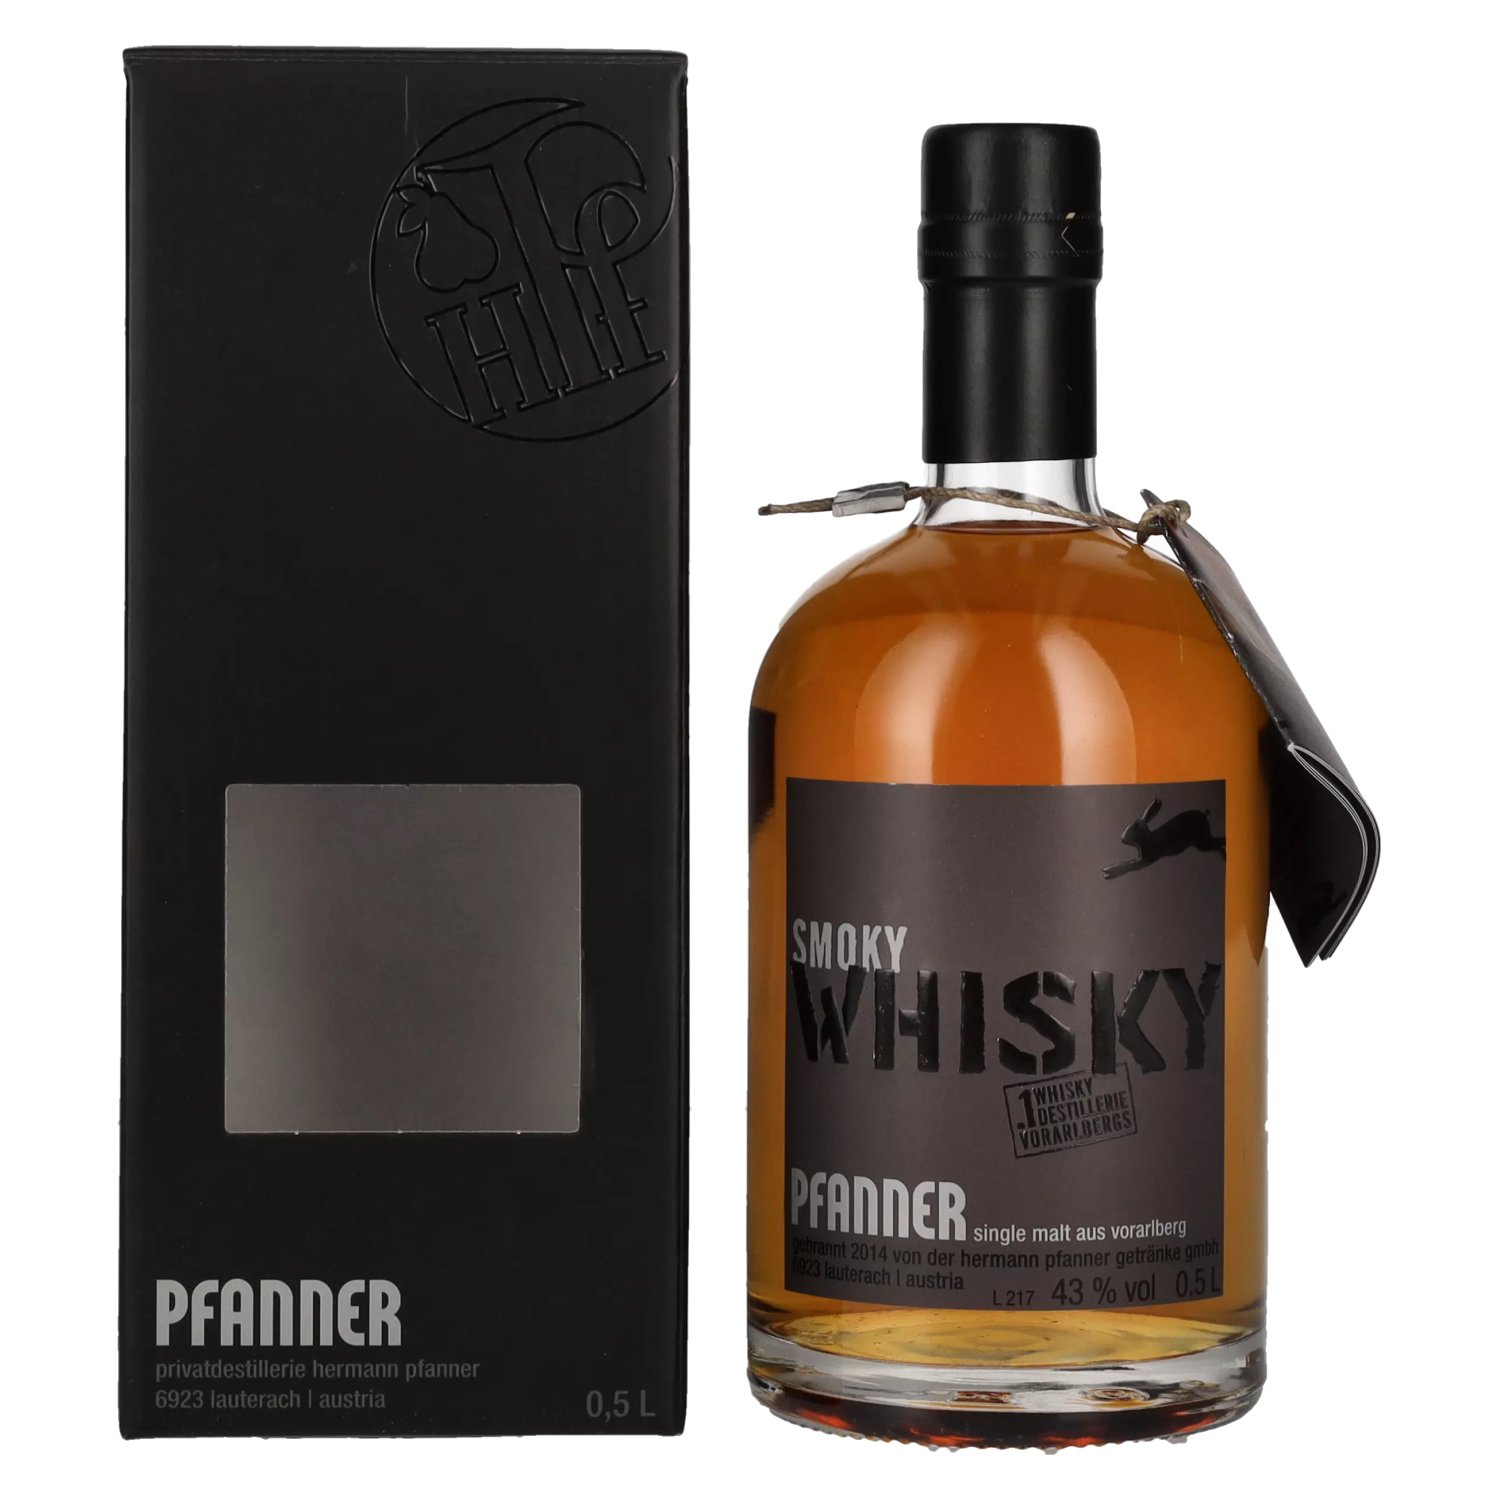 Smoky 0,5l Pfanner Geschenkbox Whisky Vol. 43% Single Malt in